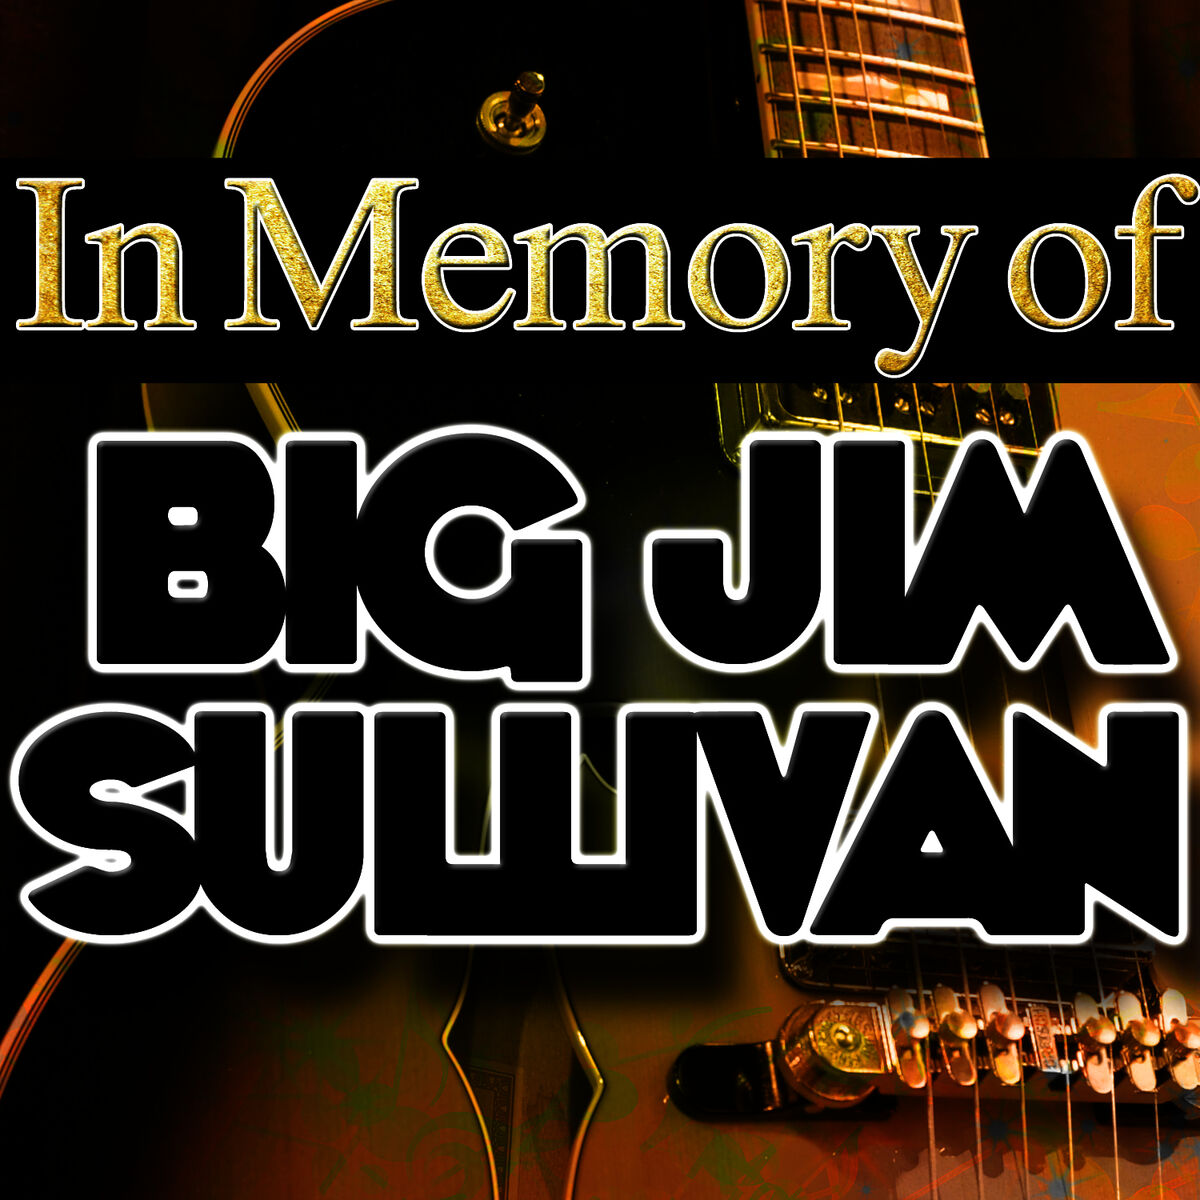 Big Jim Sullivan: albums